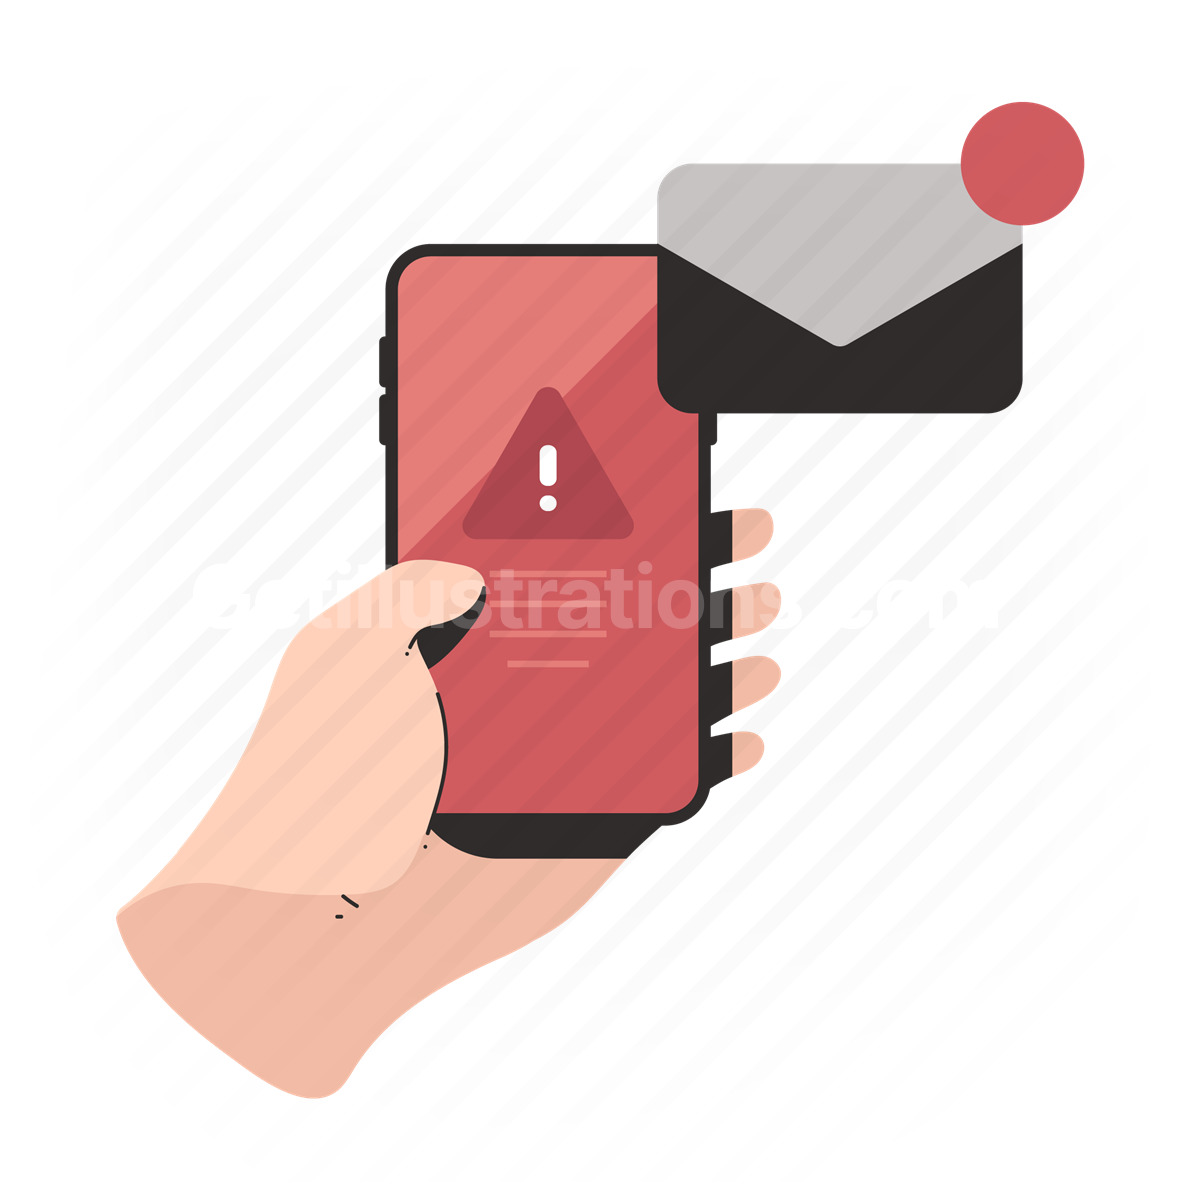 spam, alert, trash, envelope, smartphone, alert, notification